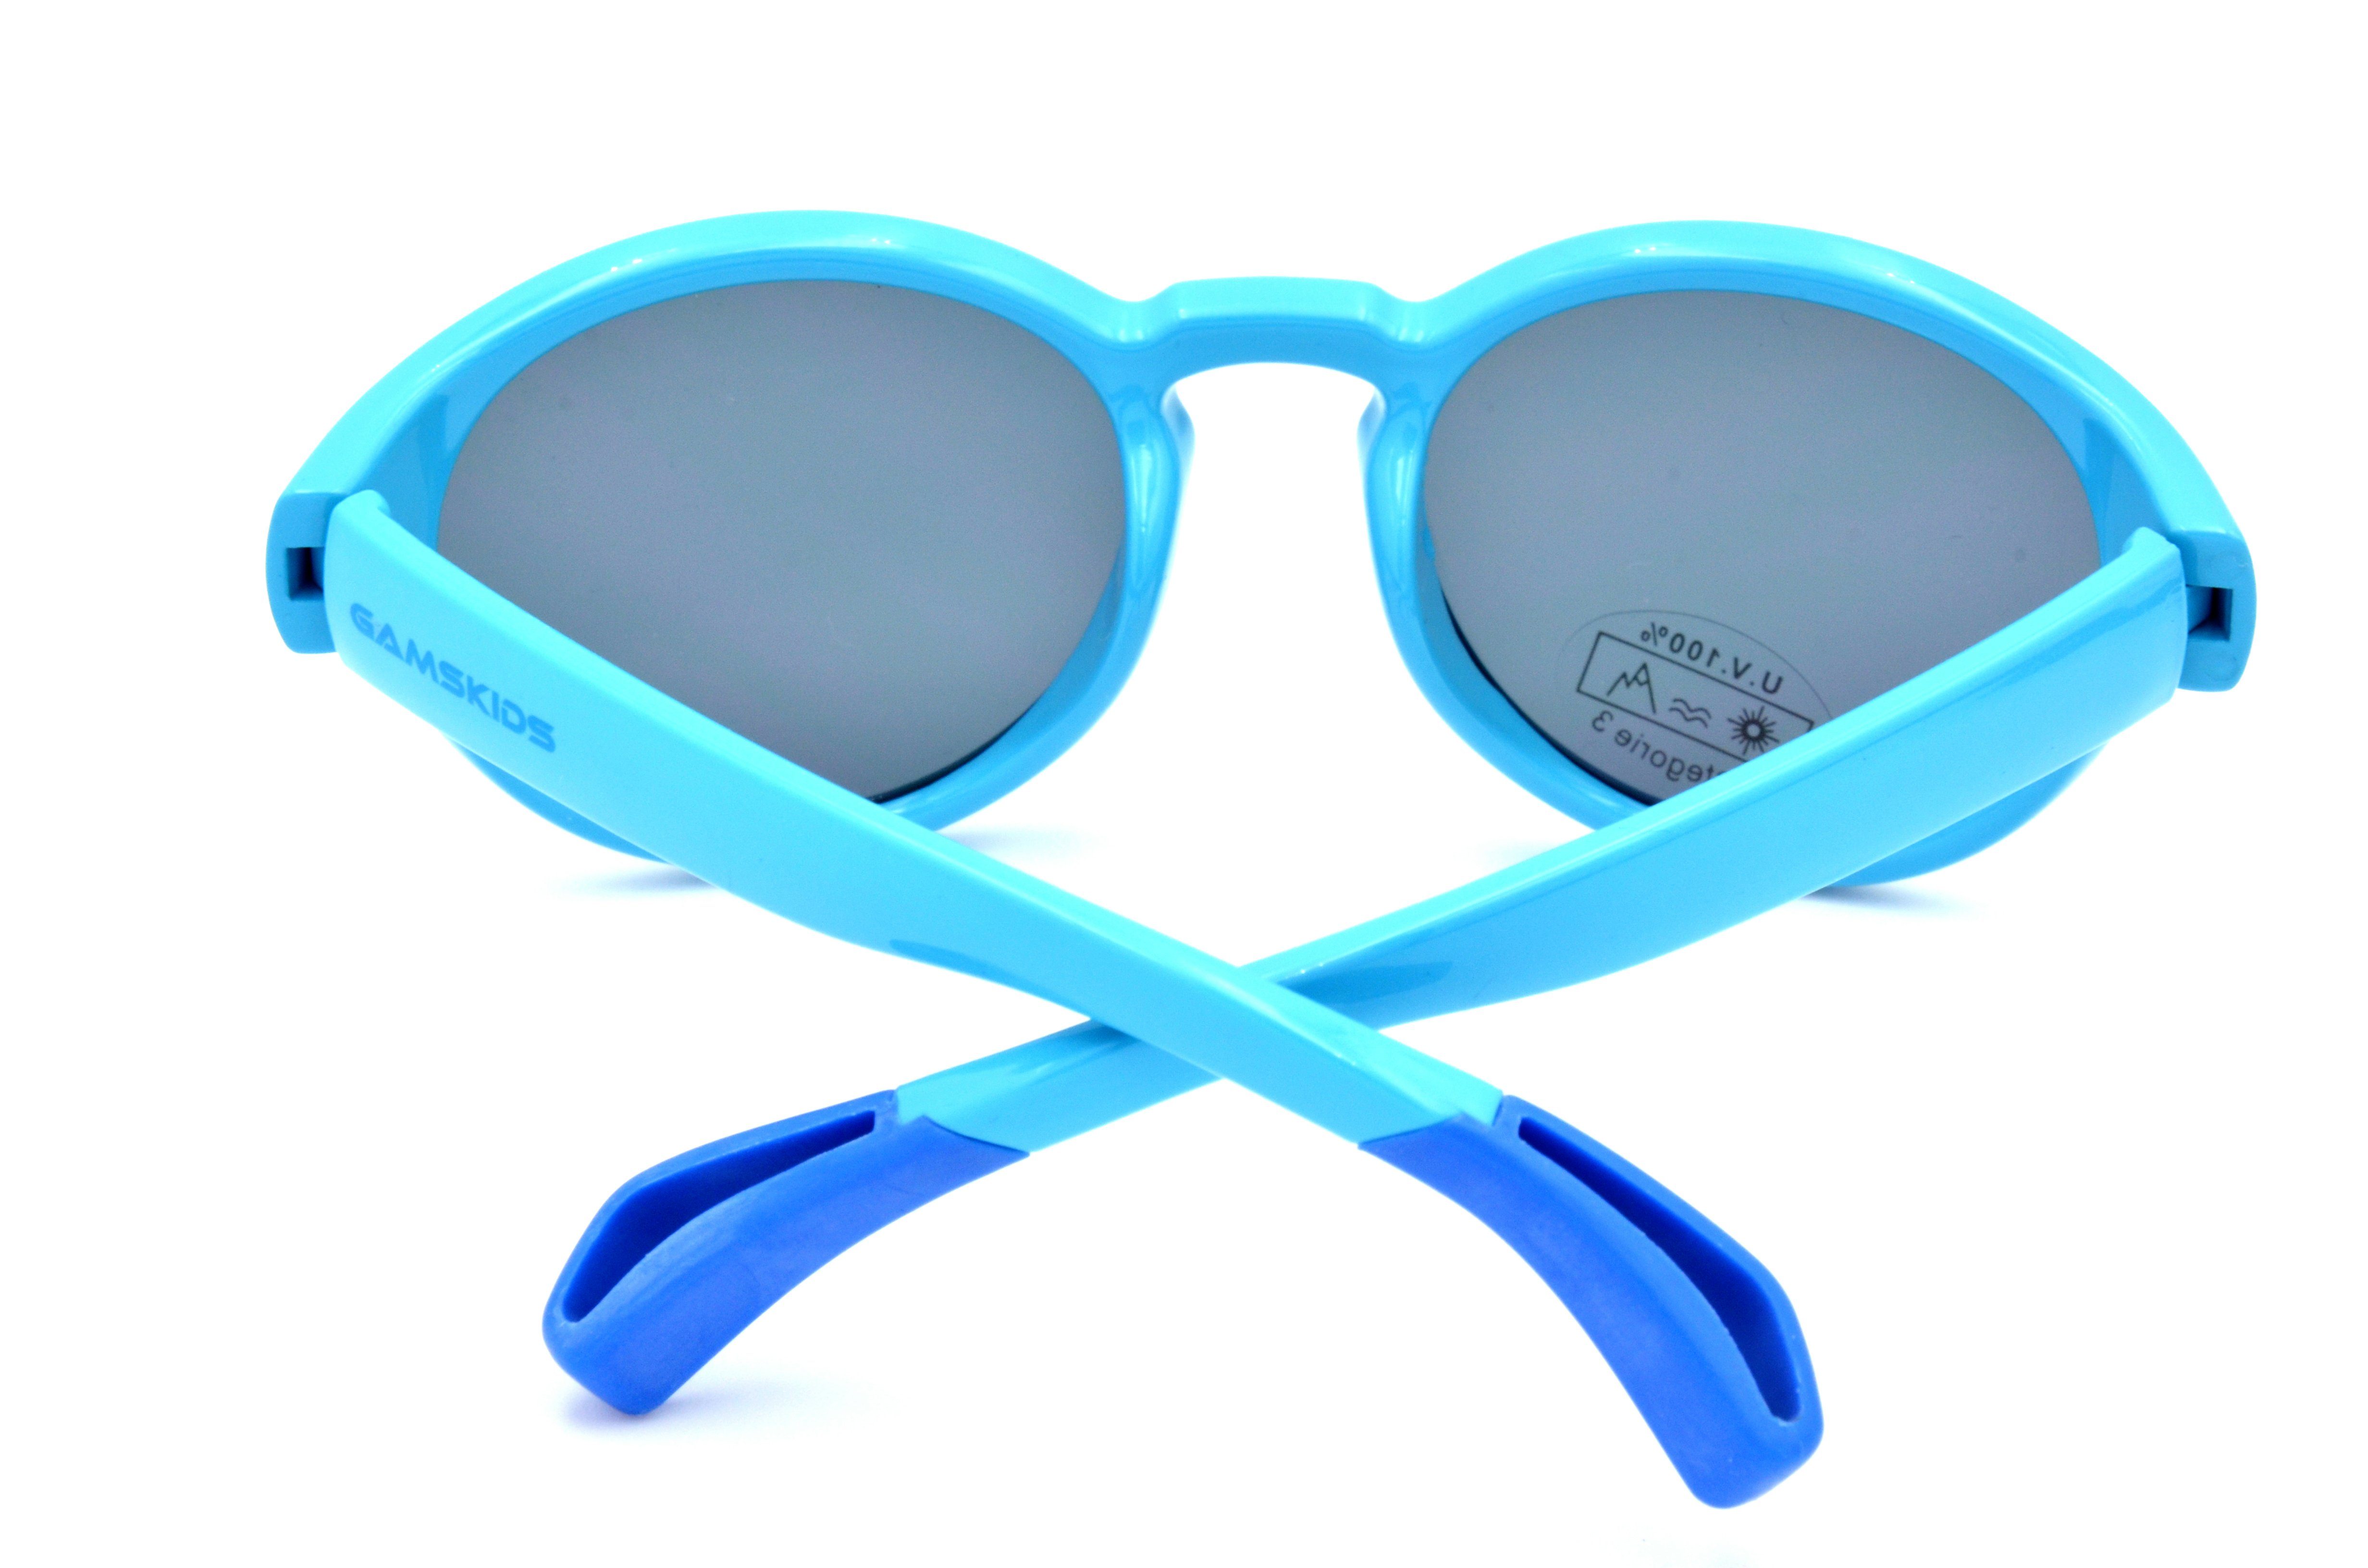 WK5417 Mädchen Unisex, lila Jahre blau, GAMSKIDS kids Kleinkindbrille Kinderbrille Sonnenbrille Jungen 5-10 grün, Gamswild